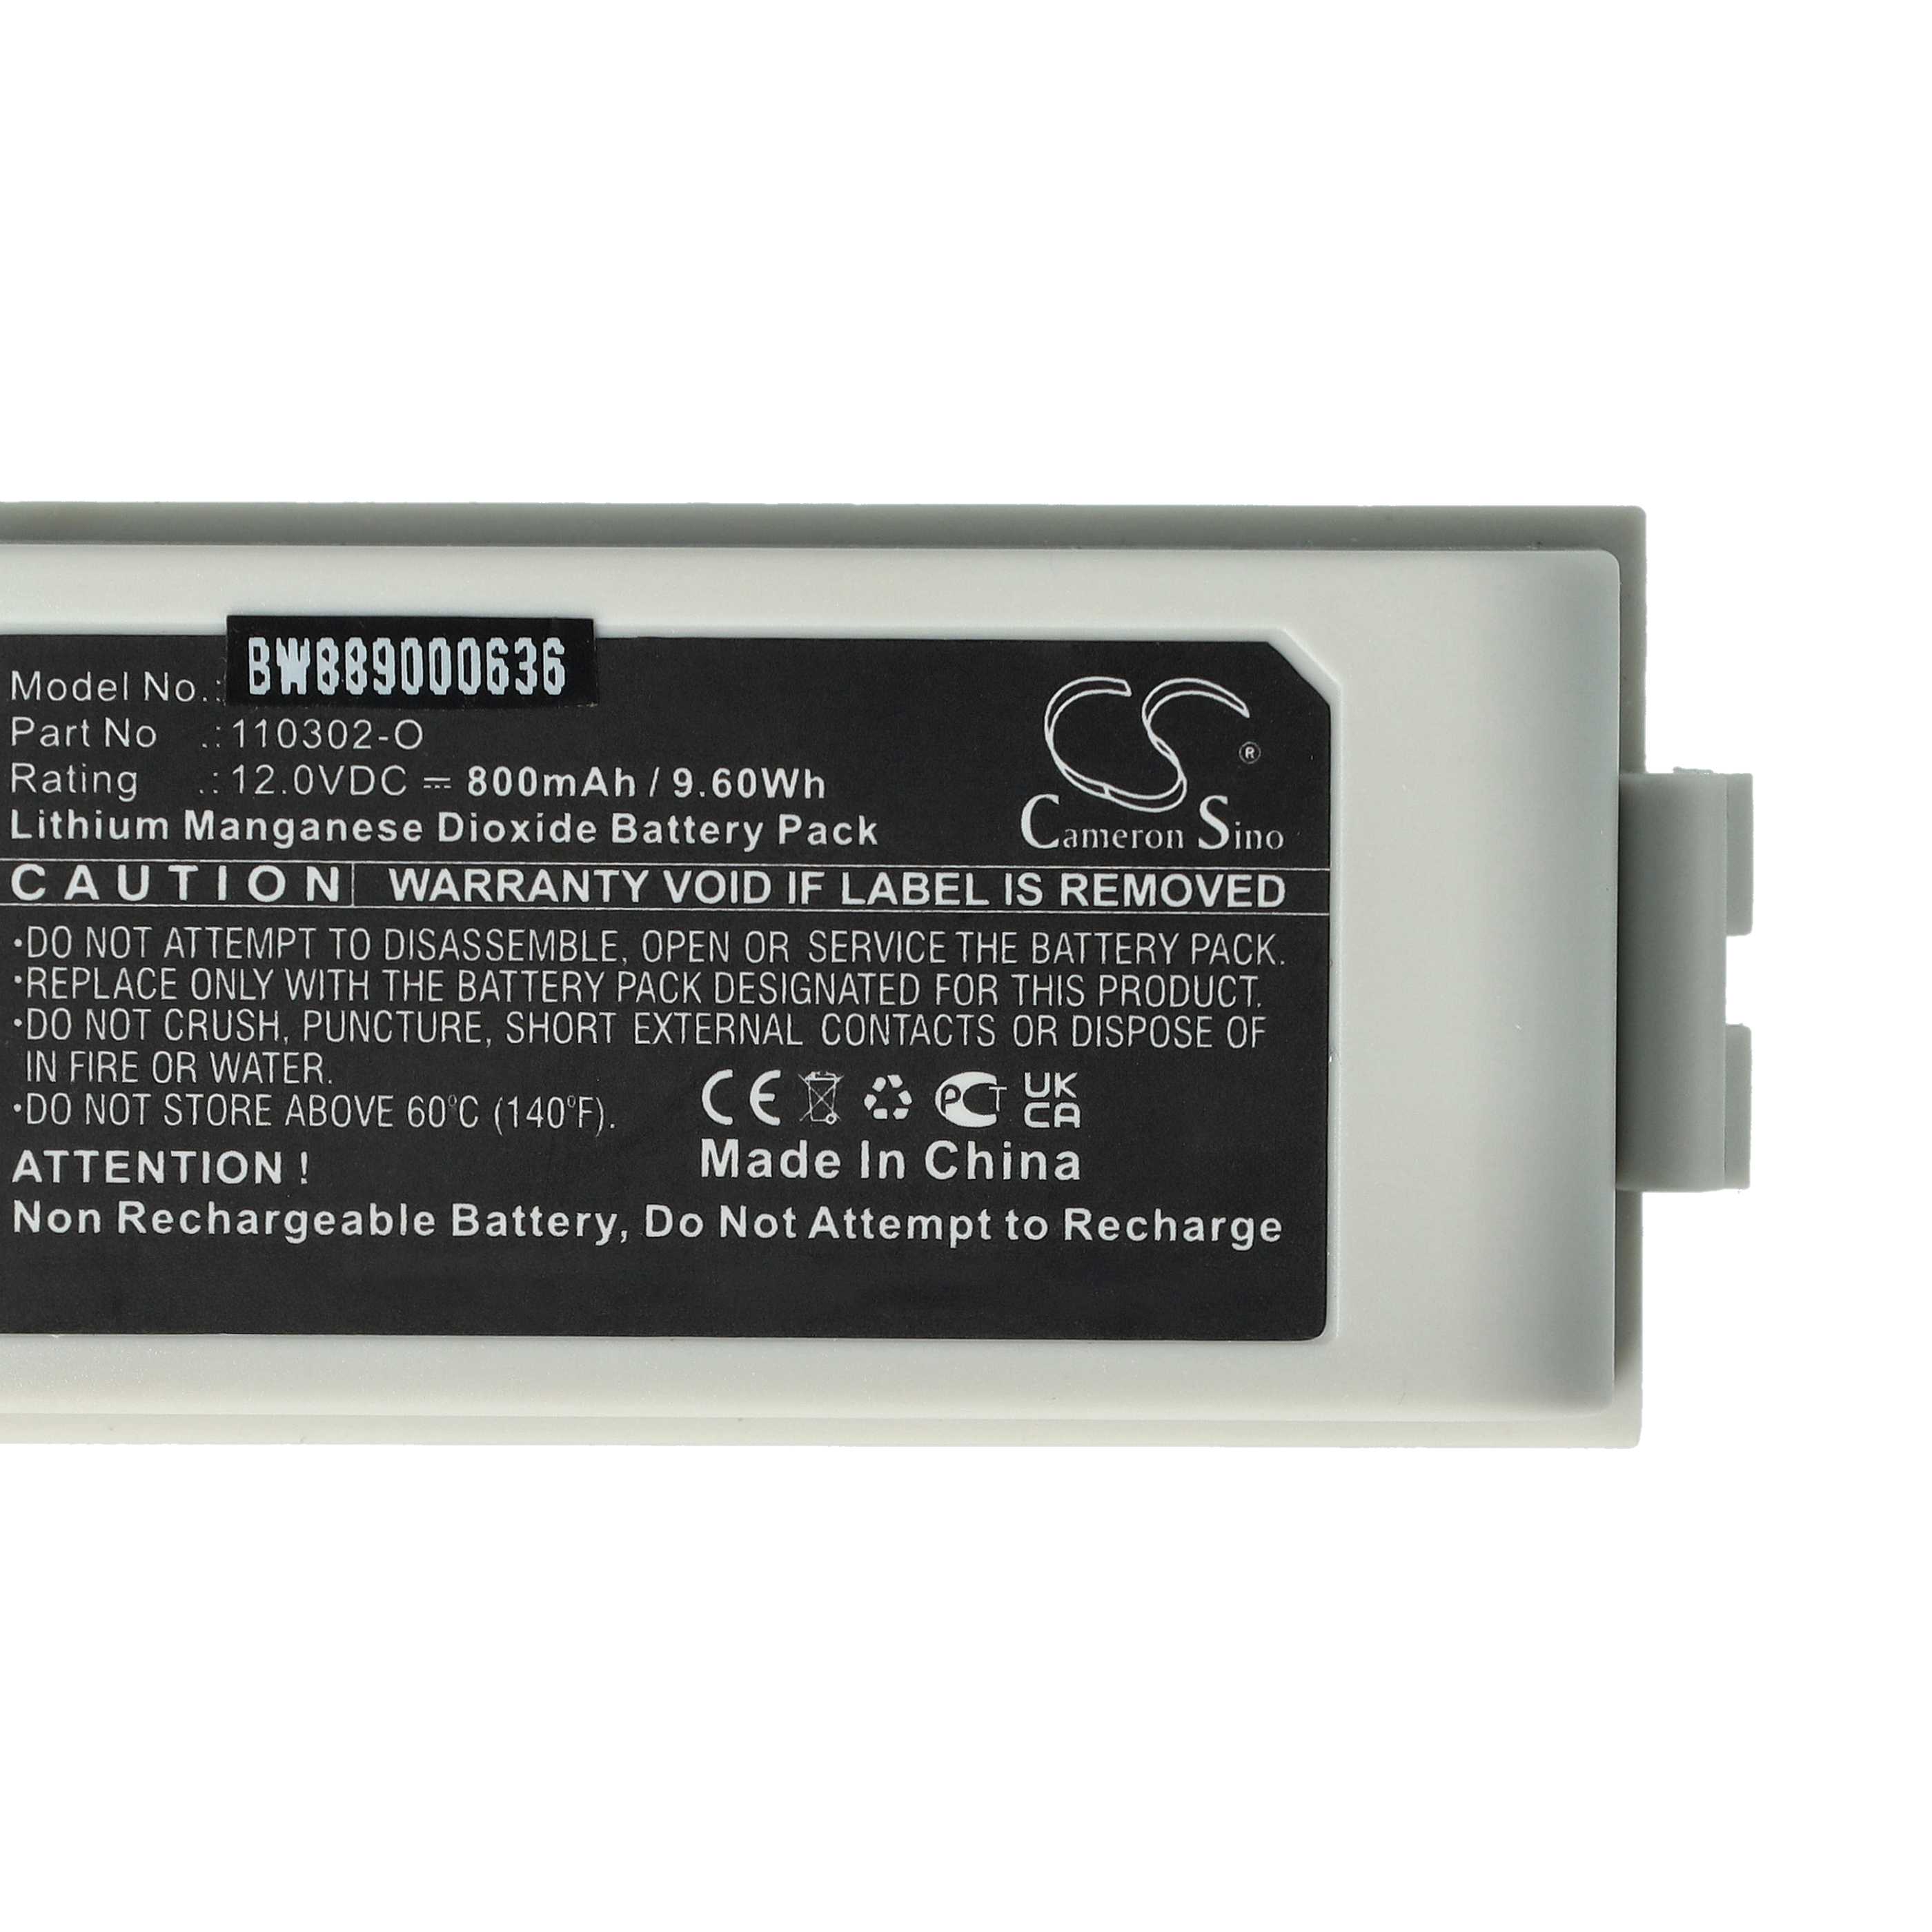 Batterie als Ersatz für Schiller 110302-O - 800mAh 12V Li-MnO2